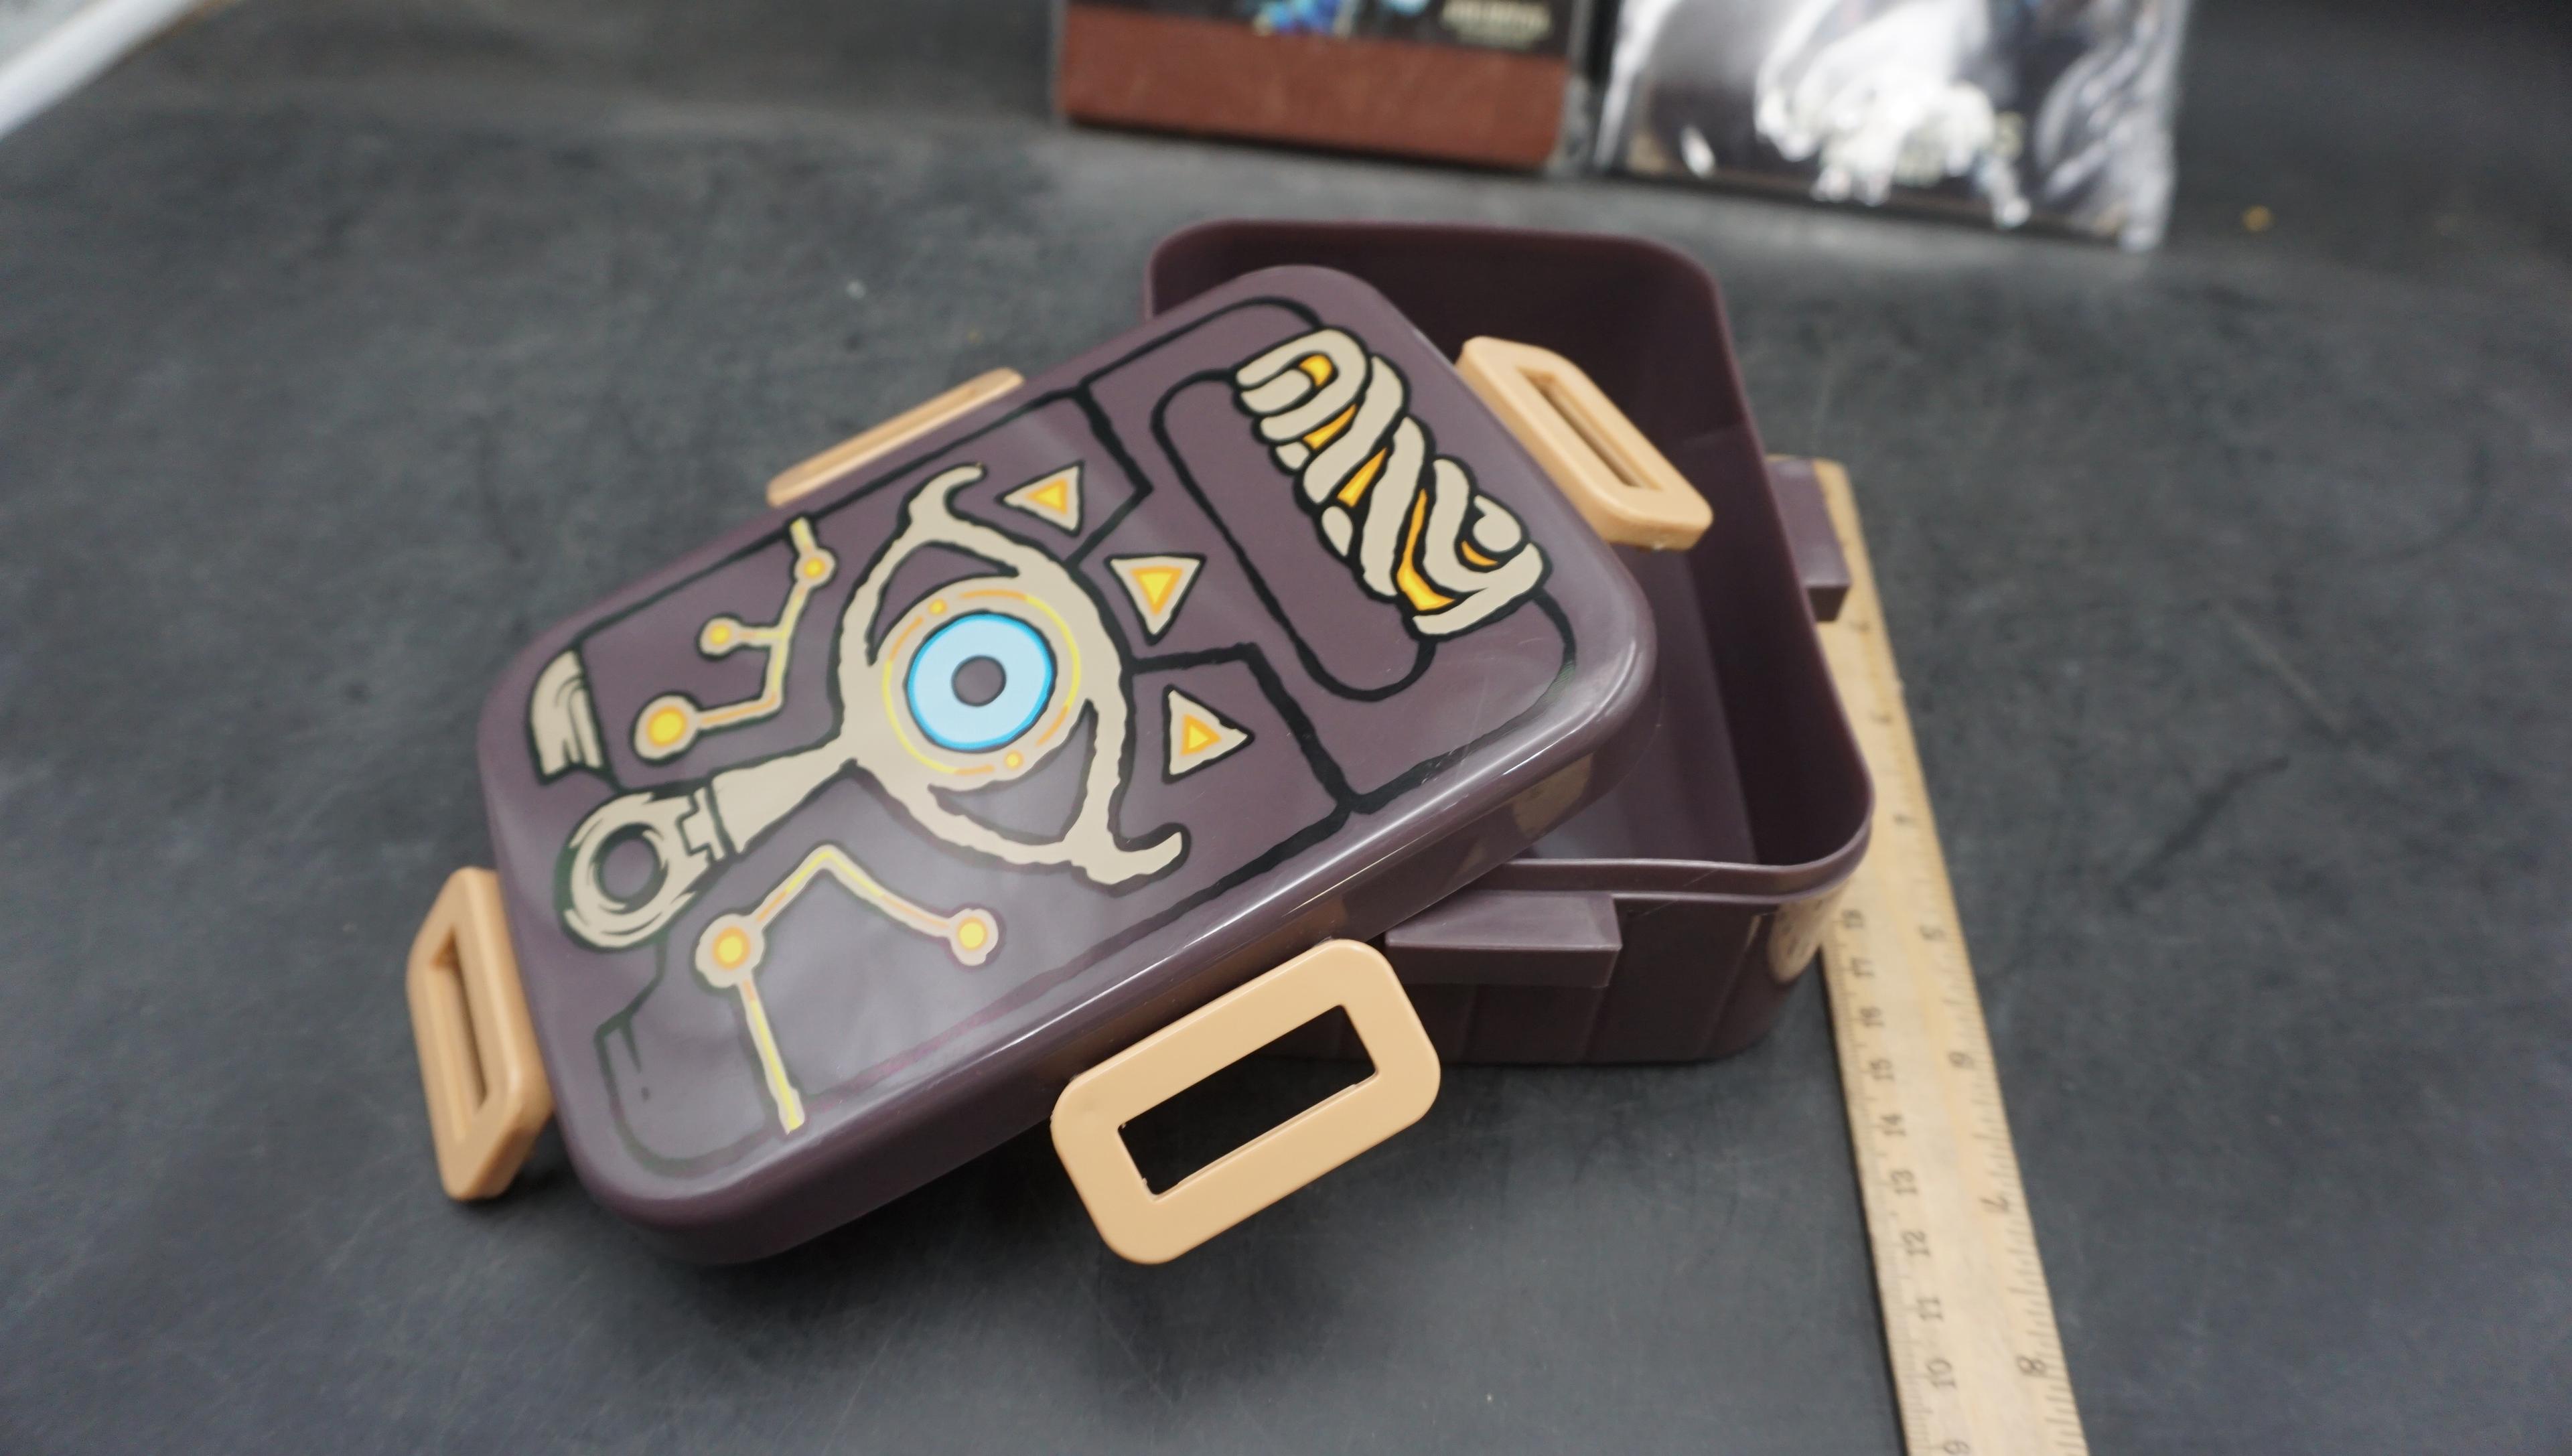 Zelda Journal, Zelda Champions Pin Set & Container